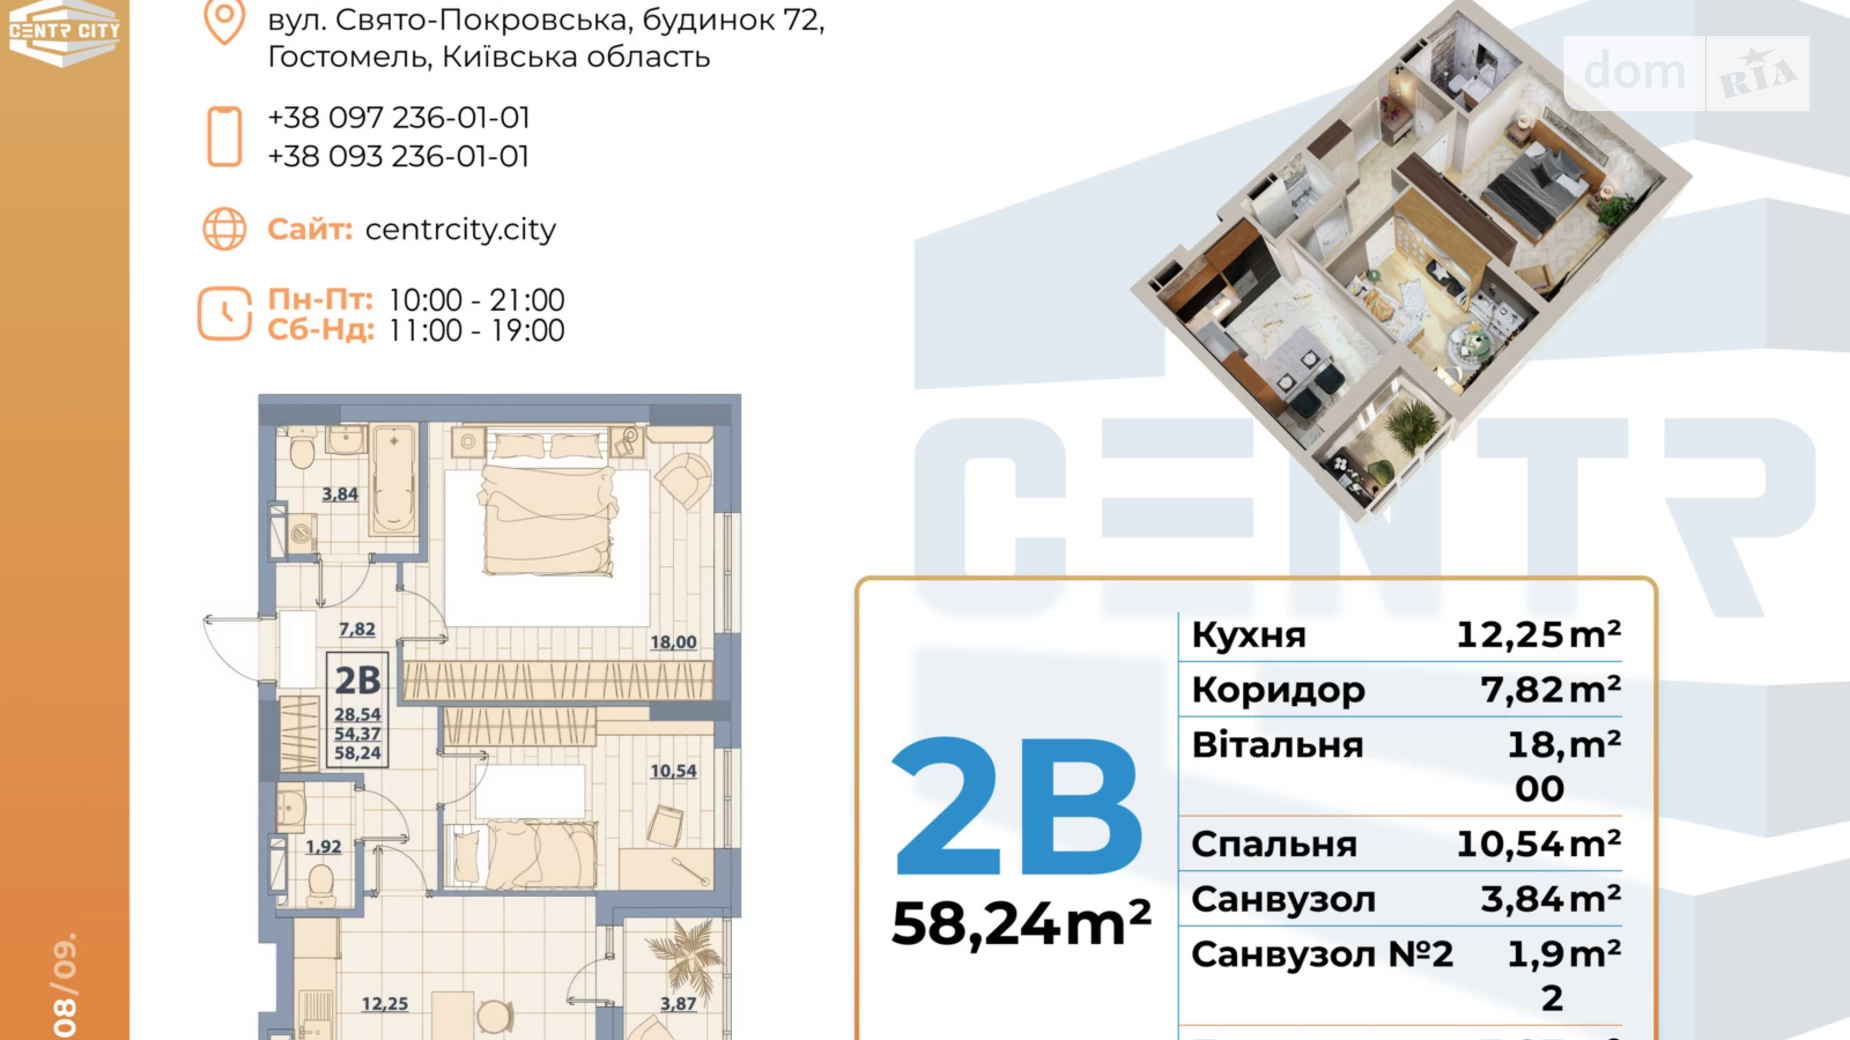 Продається 2-кімнатна квартира 64 кв. м у Гостомелі, вул. Свято-Покровська, 72